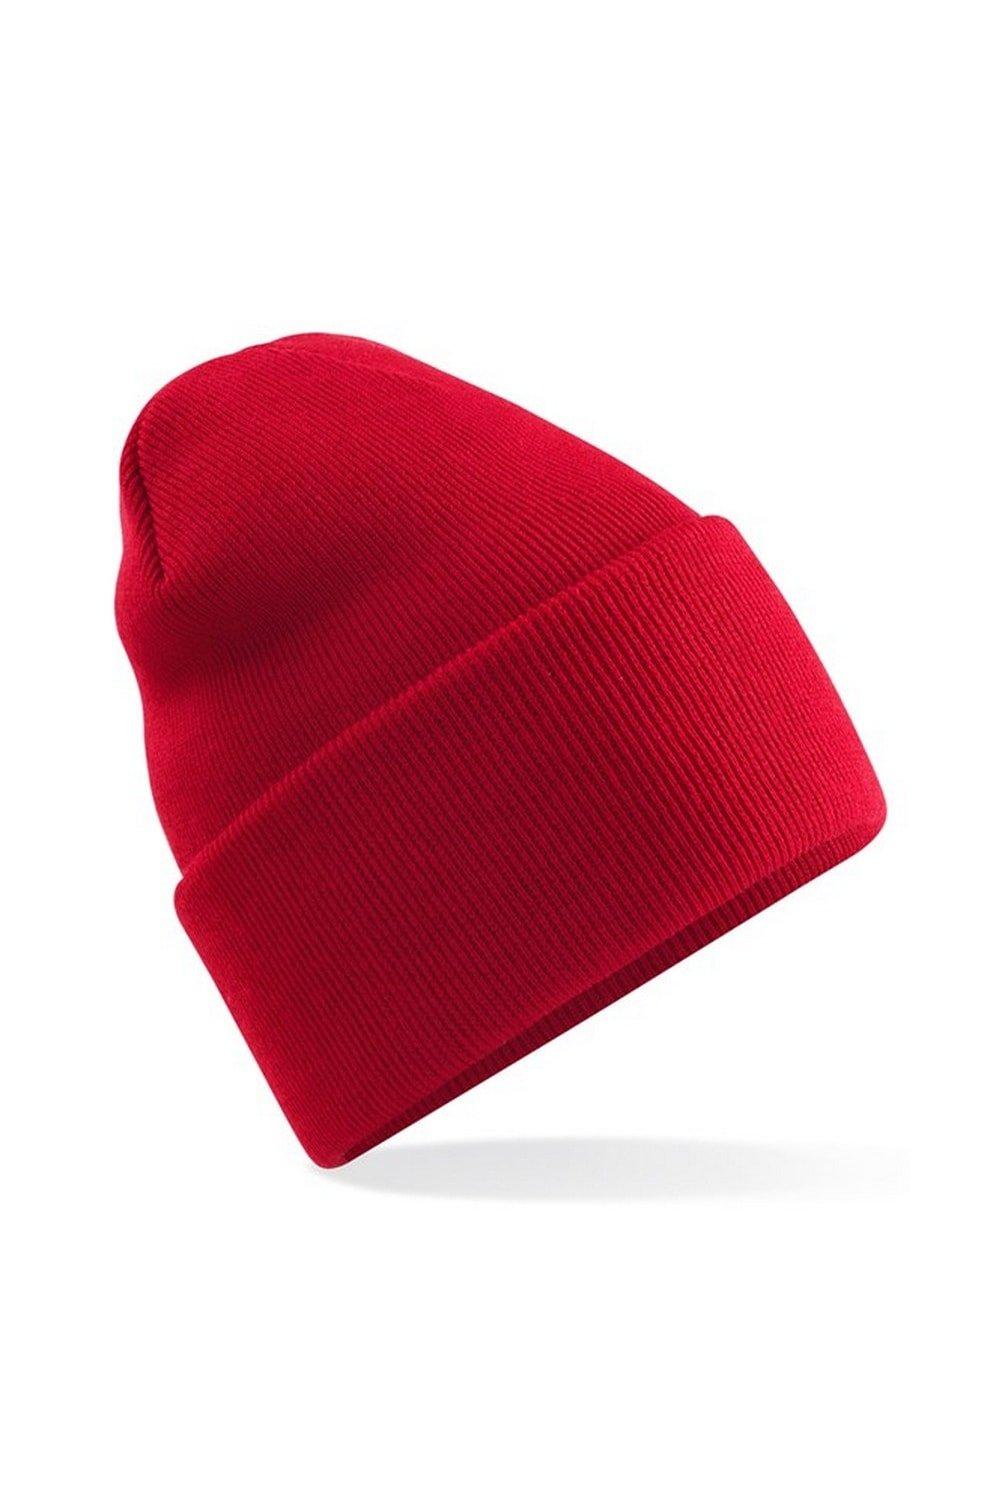 Оригинальная шапка-бини с отвернутыми манжетами Beechfield, красный оригинальная зимняя шапка бини с манжетами beechfield красный